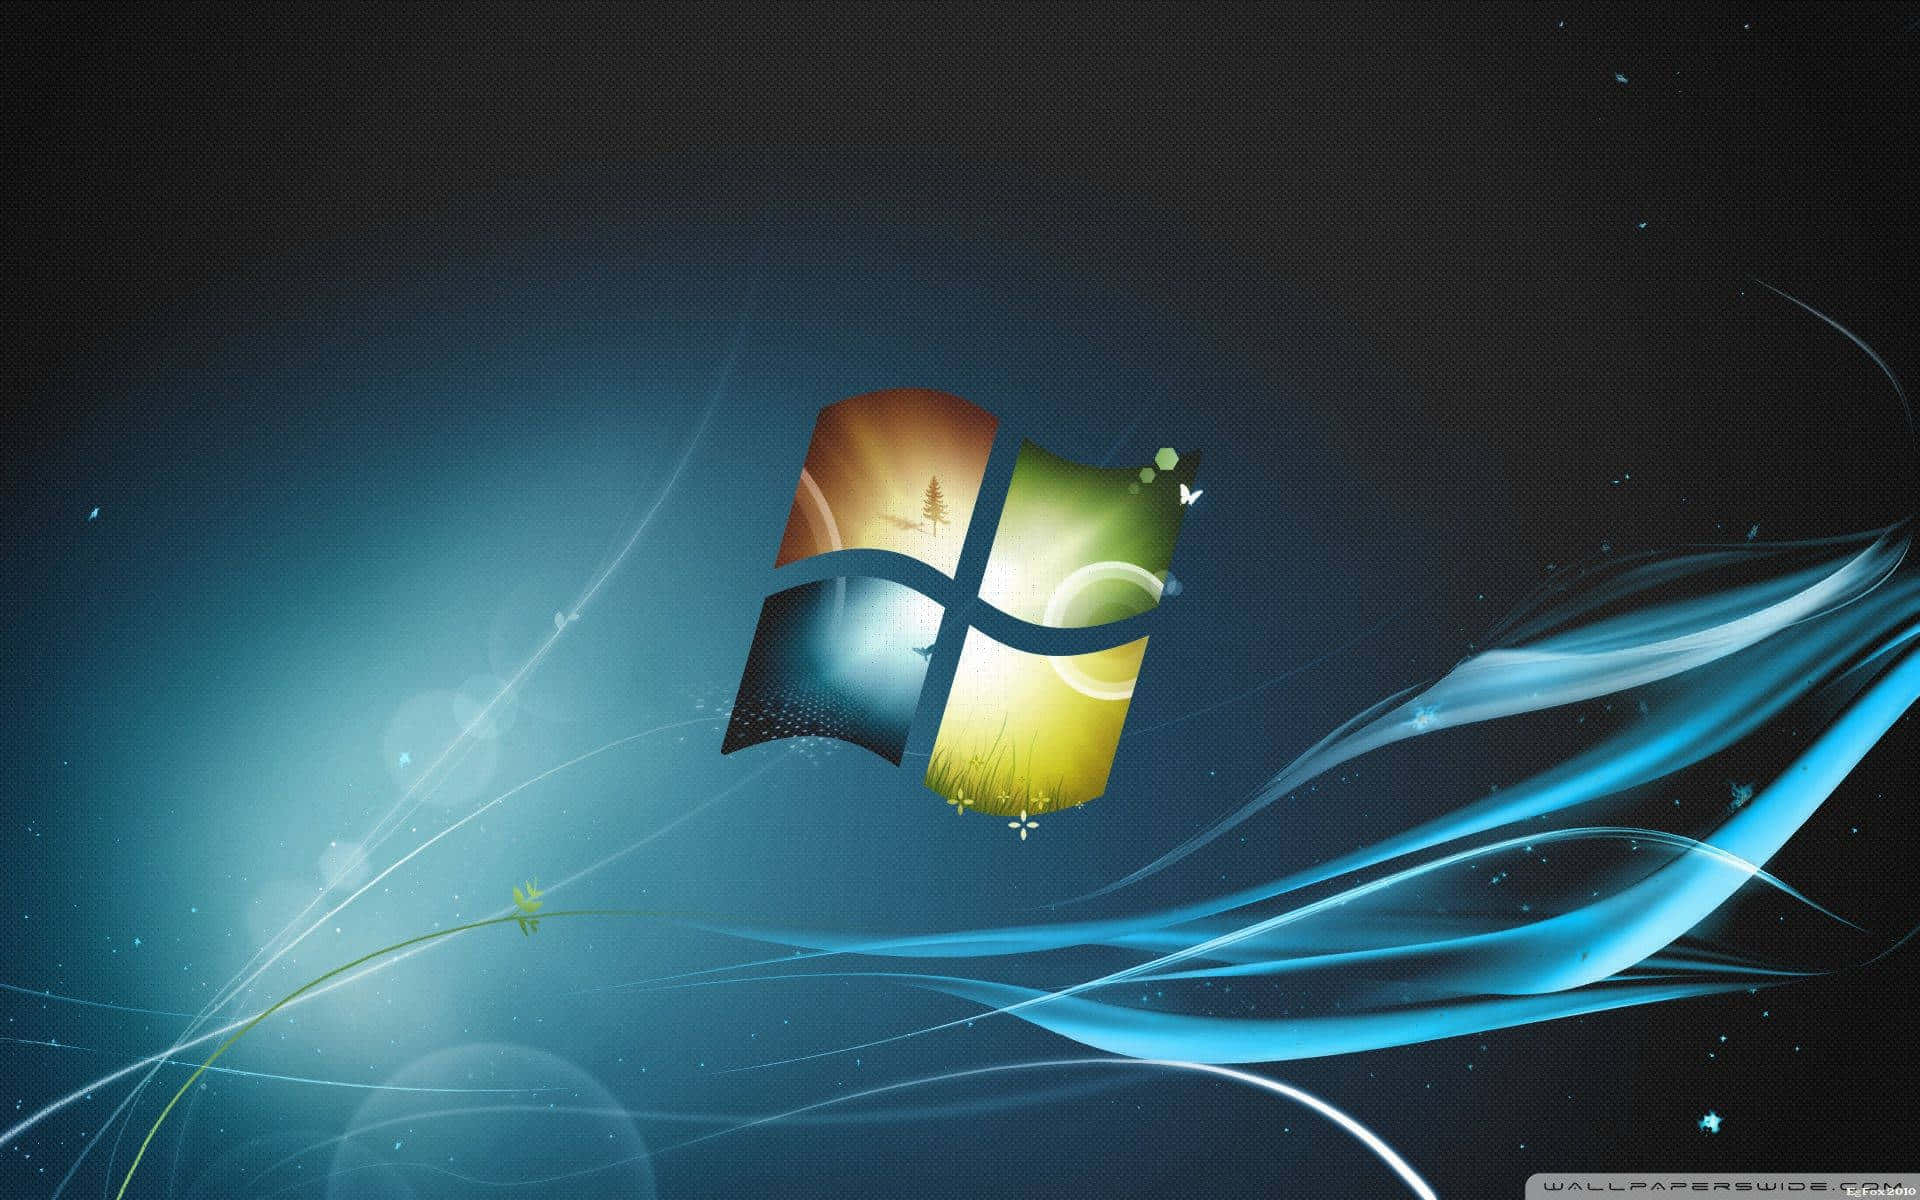 Windows7 Bakgrundsbilder. Wallpaper